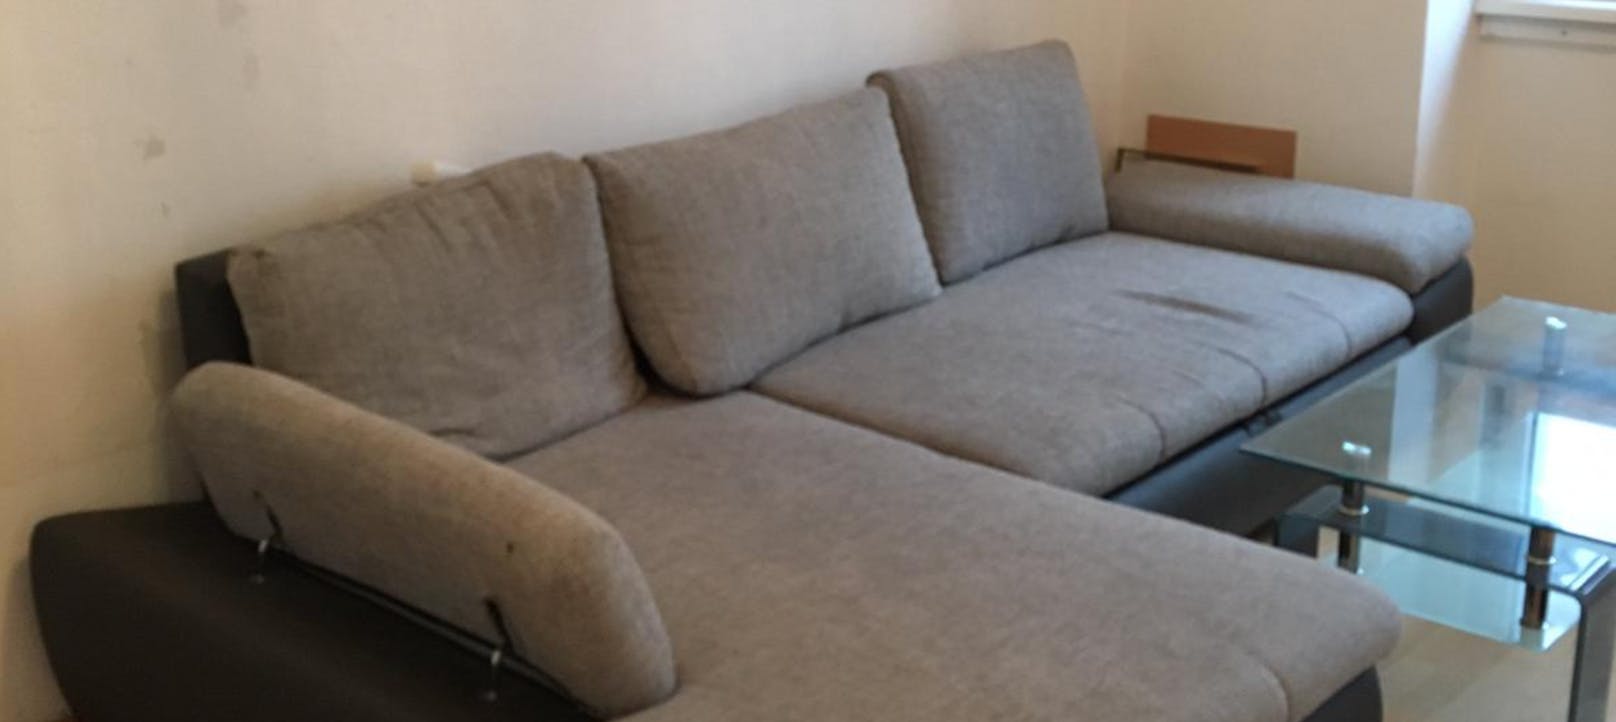 Die Couch, die keiner wollte.